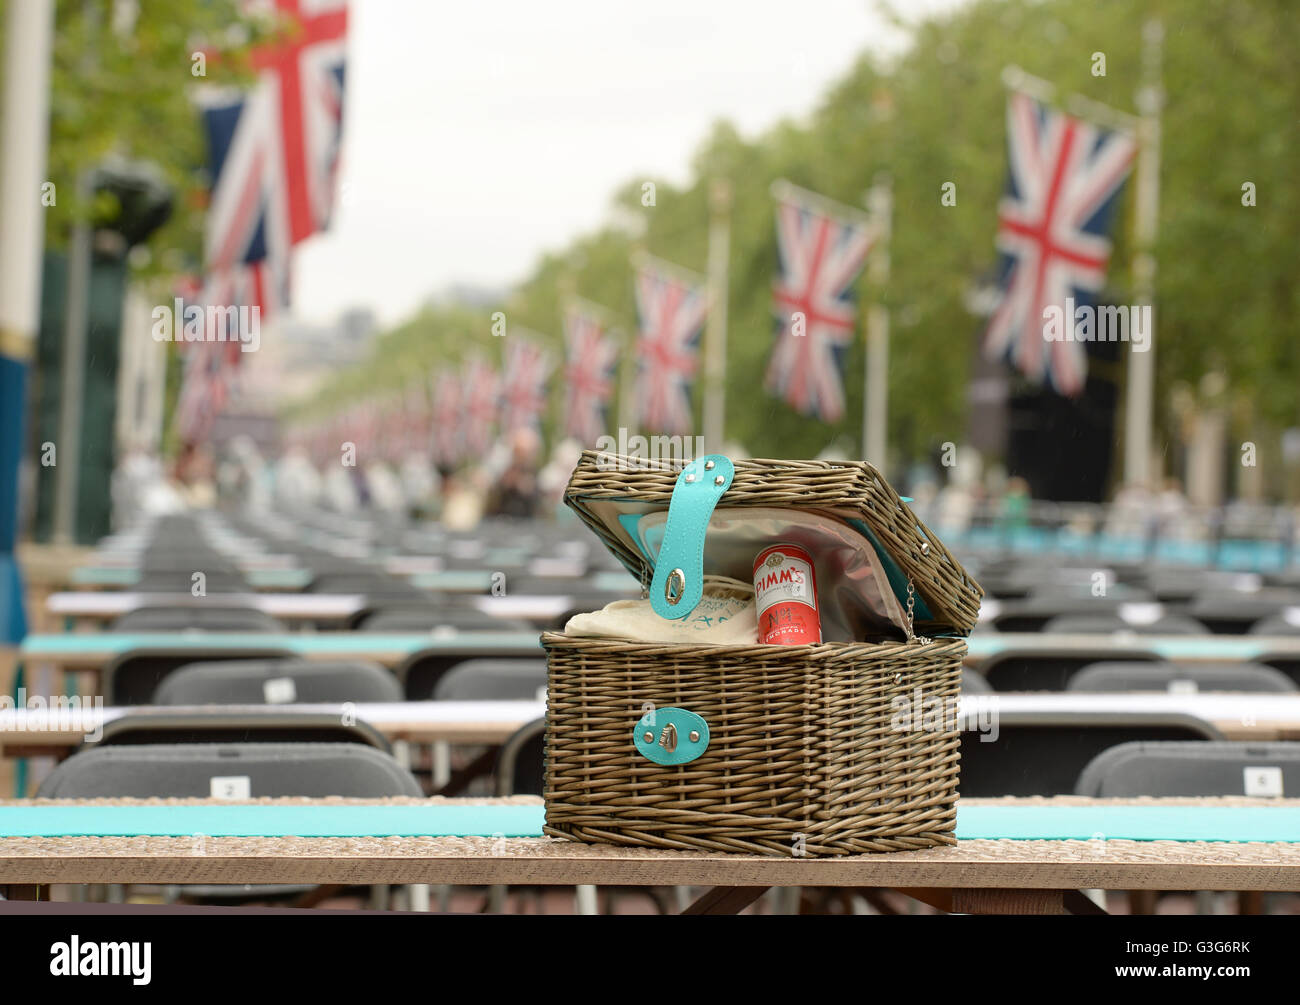 NUR zur redaktionellen Nutzung eine offizielle Geschenkkorb enthält einen Pimm's The Patron mittags auf The Mall im Zentrum von London zu Ehren Königin Elzabeth II 90. Geburtstag. Stockfoto